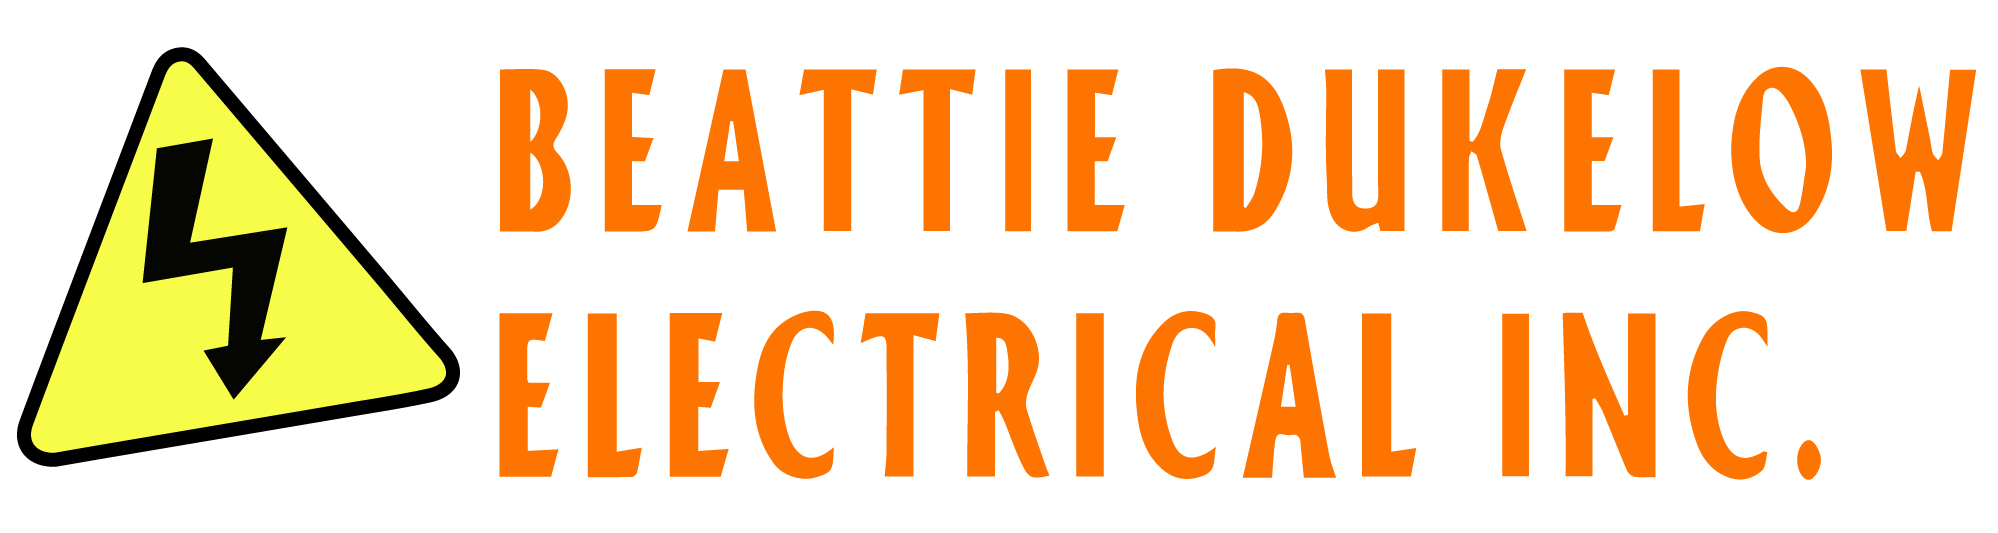 Beattie Dukelow Electrical